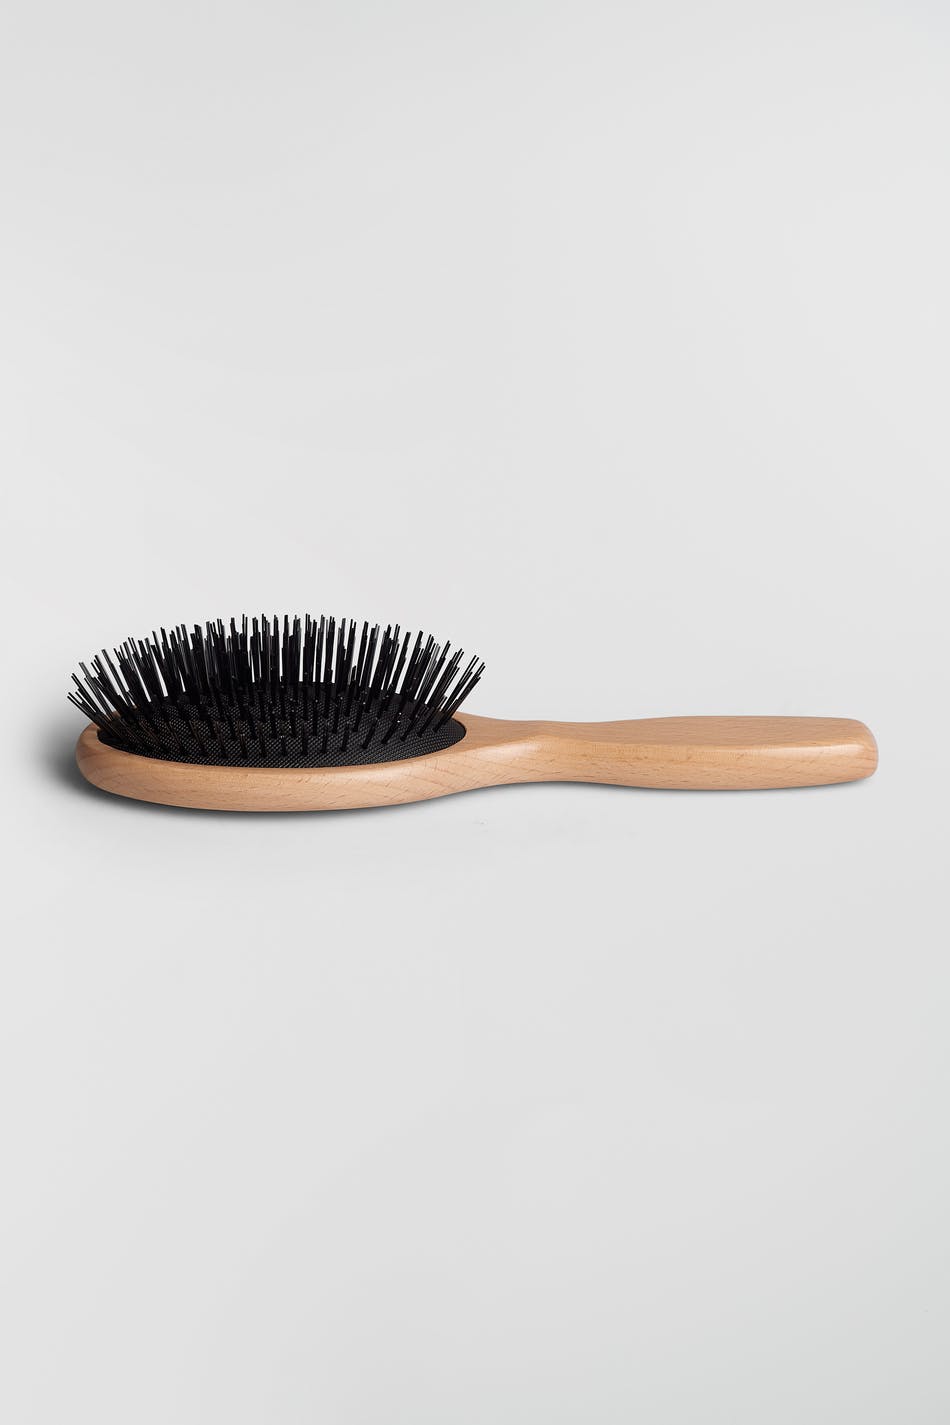 Gina Tricot - Nathalie hair brush